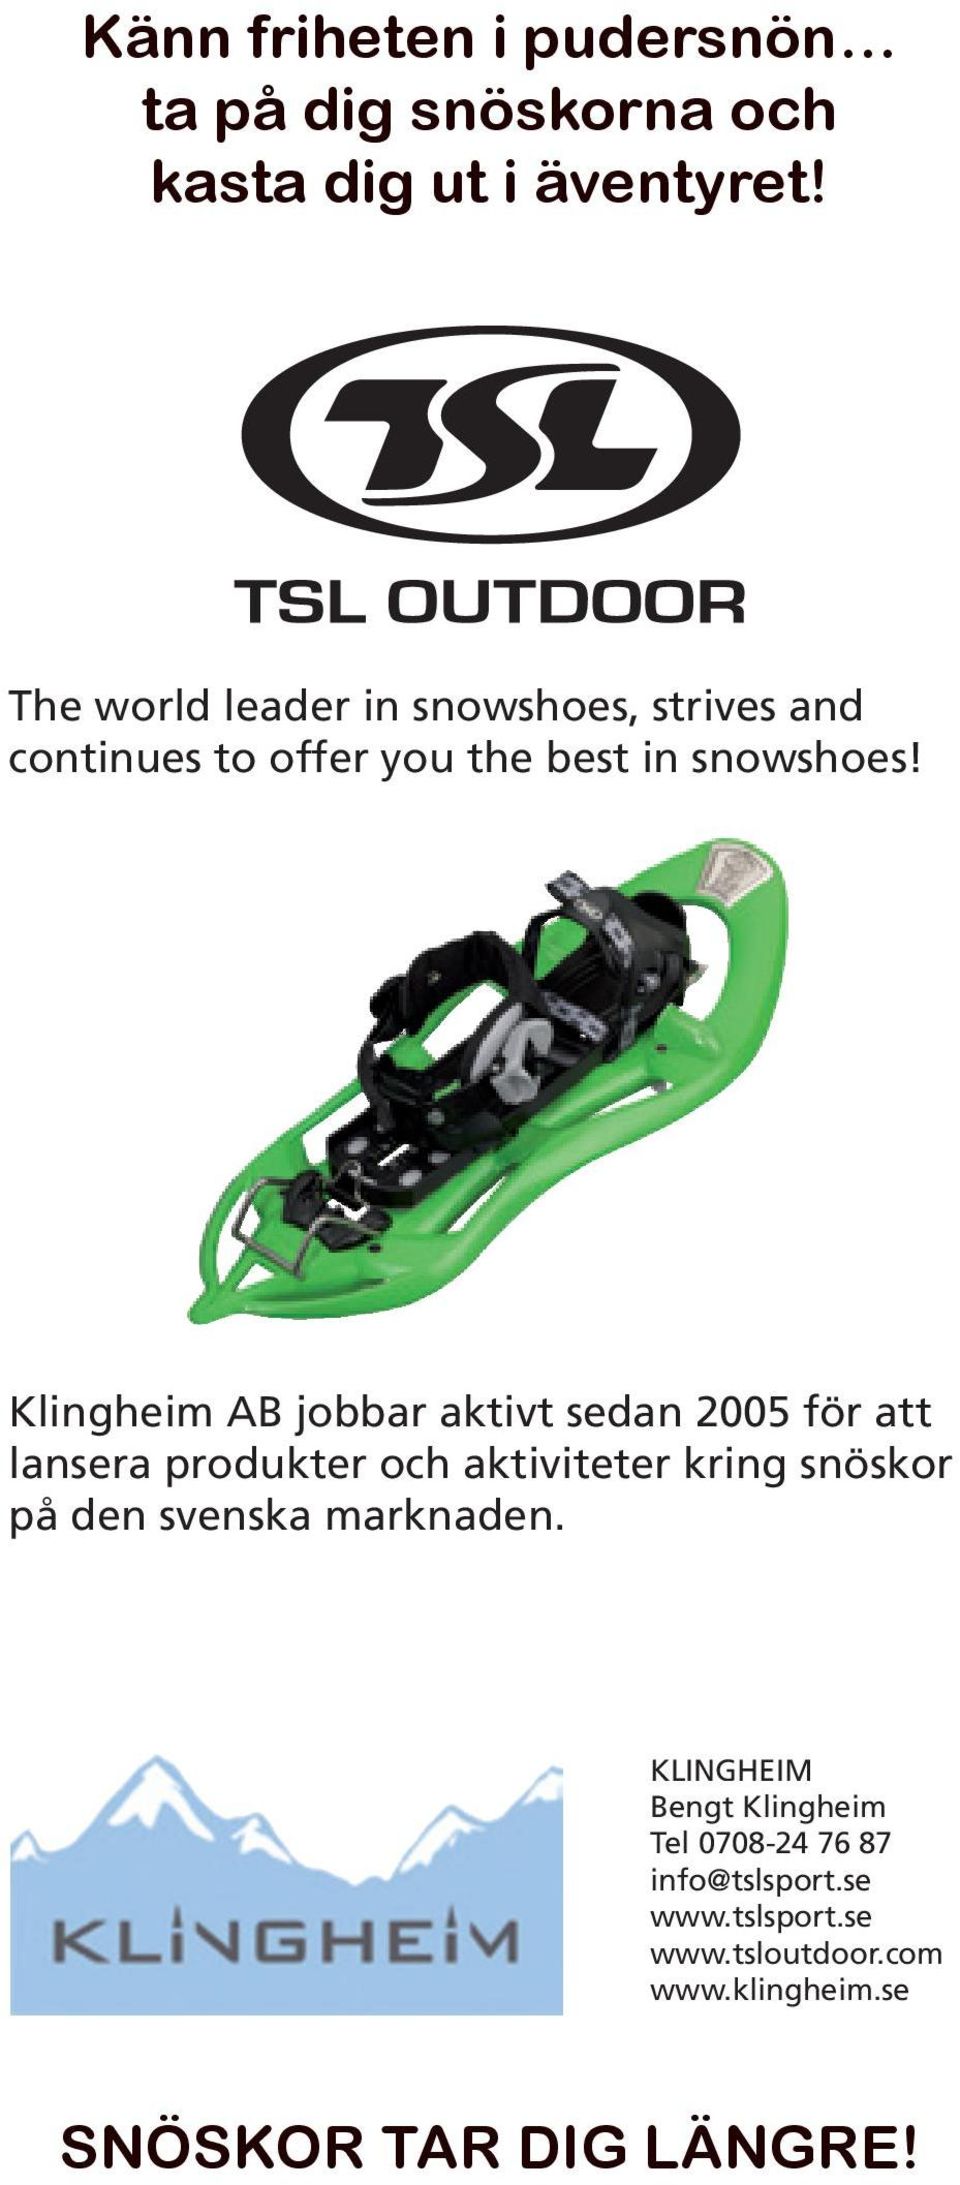 Klingheim AB jobbar aktivt sedan 2005 för att lansera produkter och aktiviteter kring snöskor på